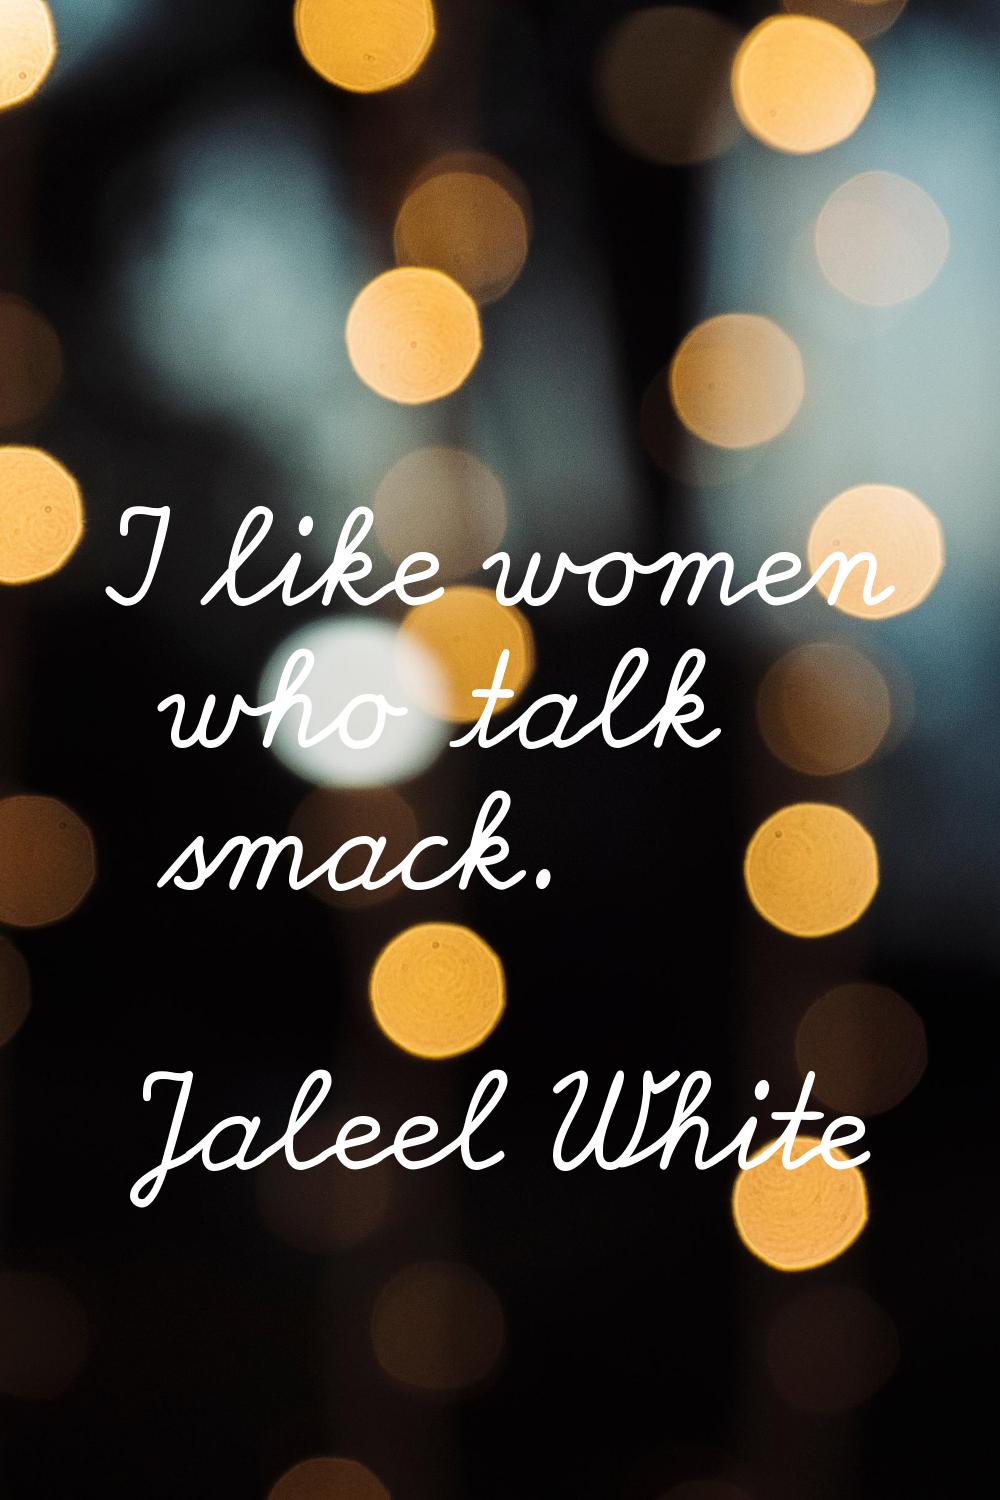 I like women who talk smack.